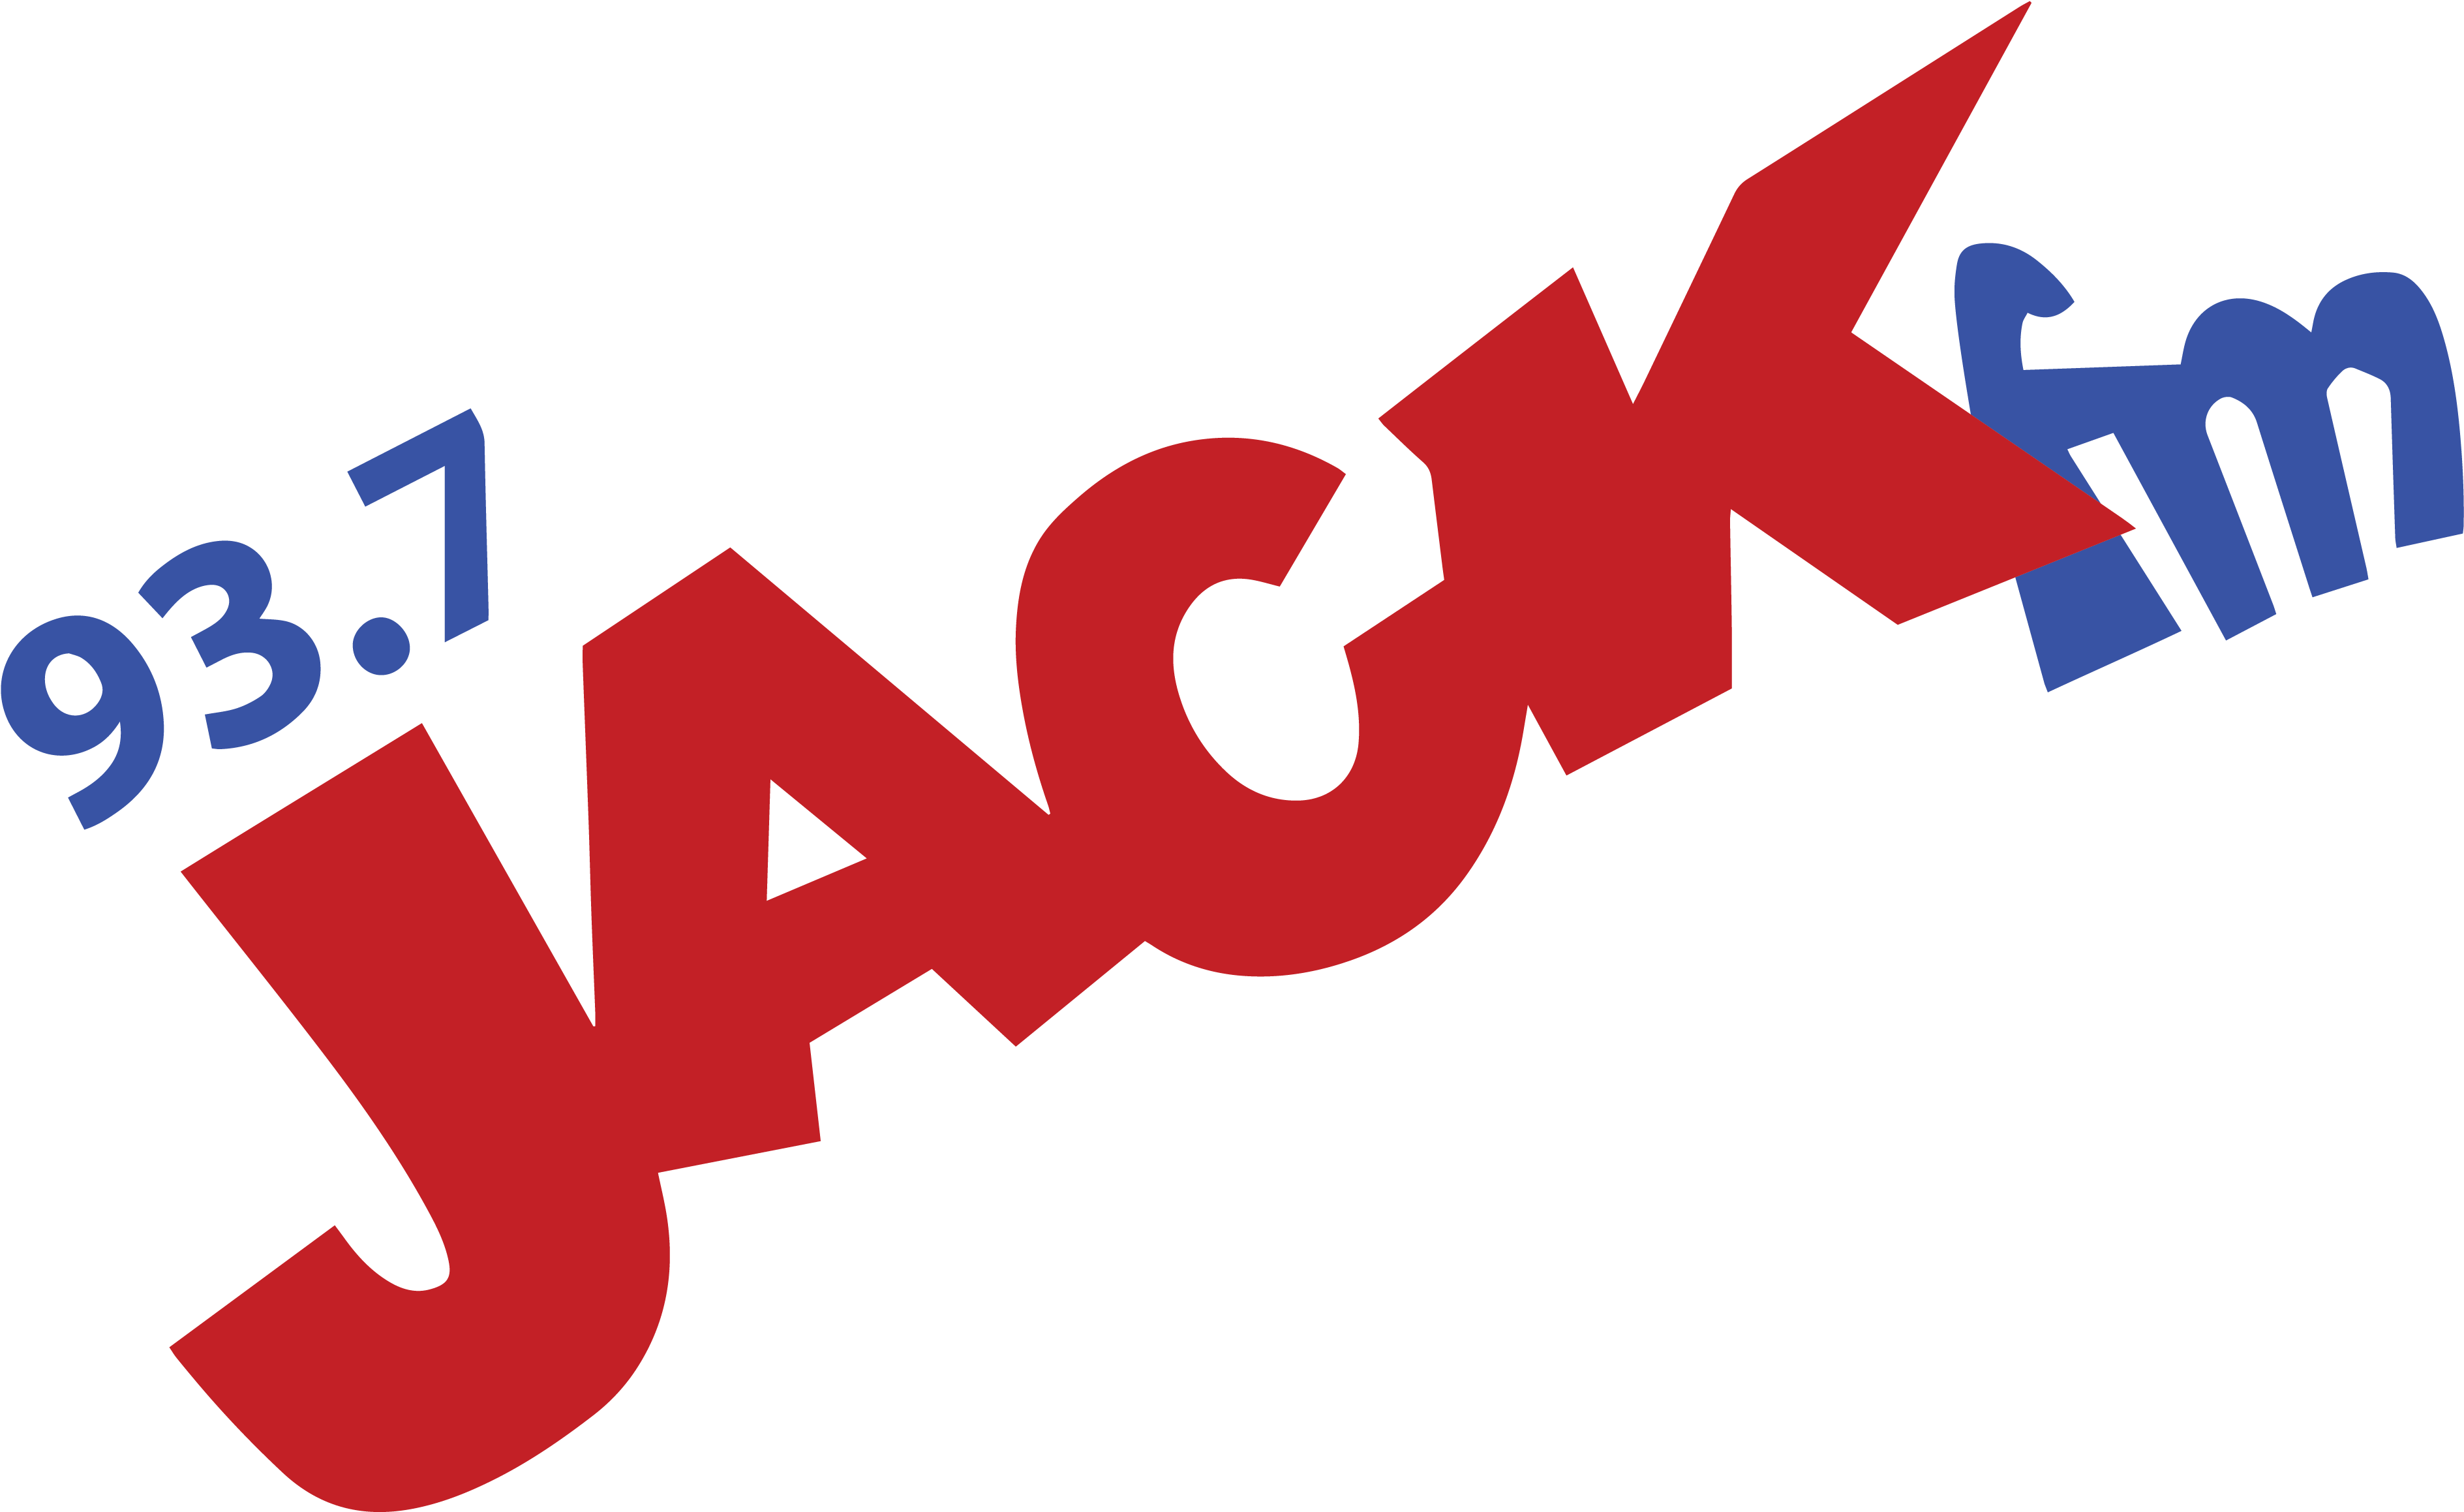 Ebc Logos 0118 Jackf - Jack Fm Vancouver Clipart (3900x2526), Png Download